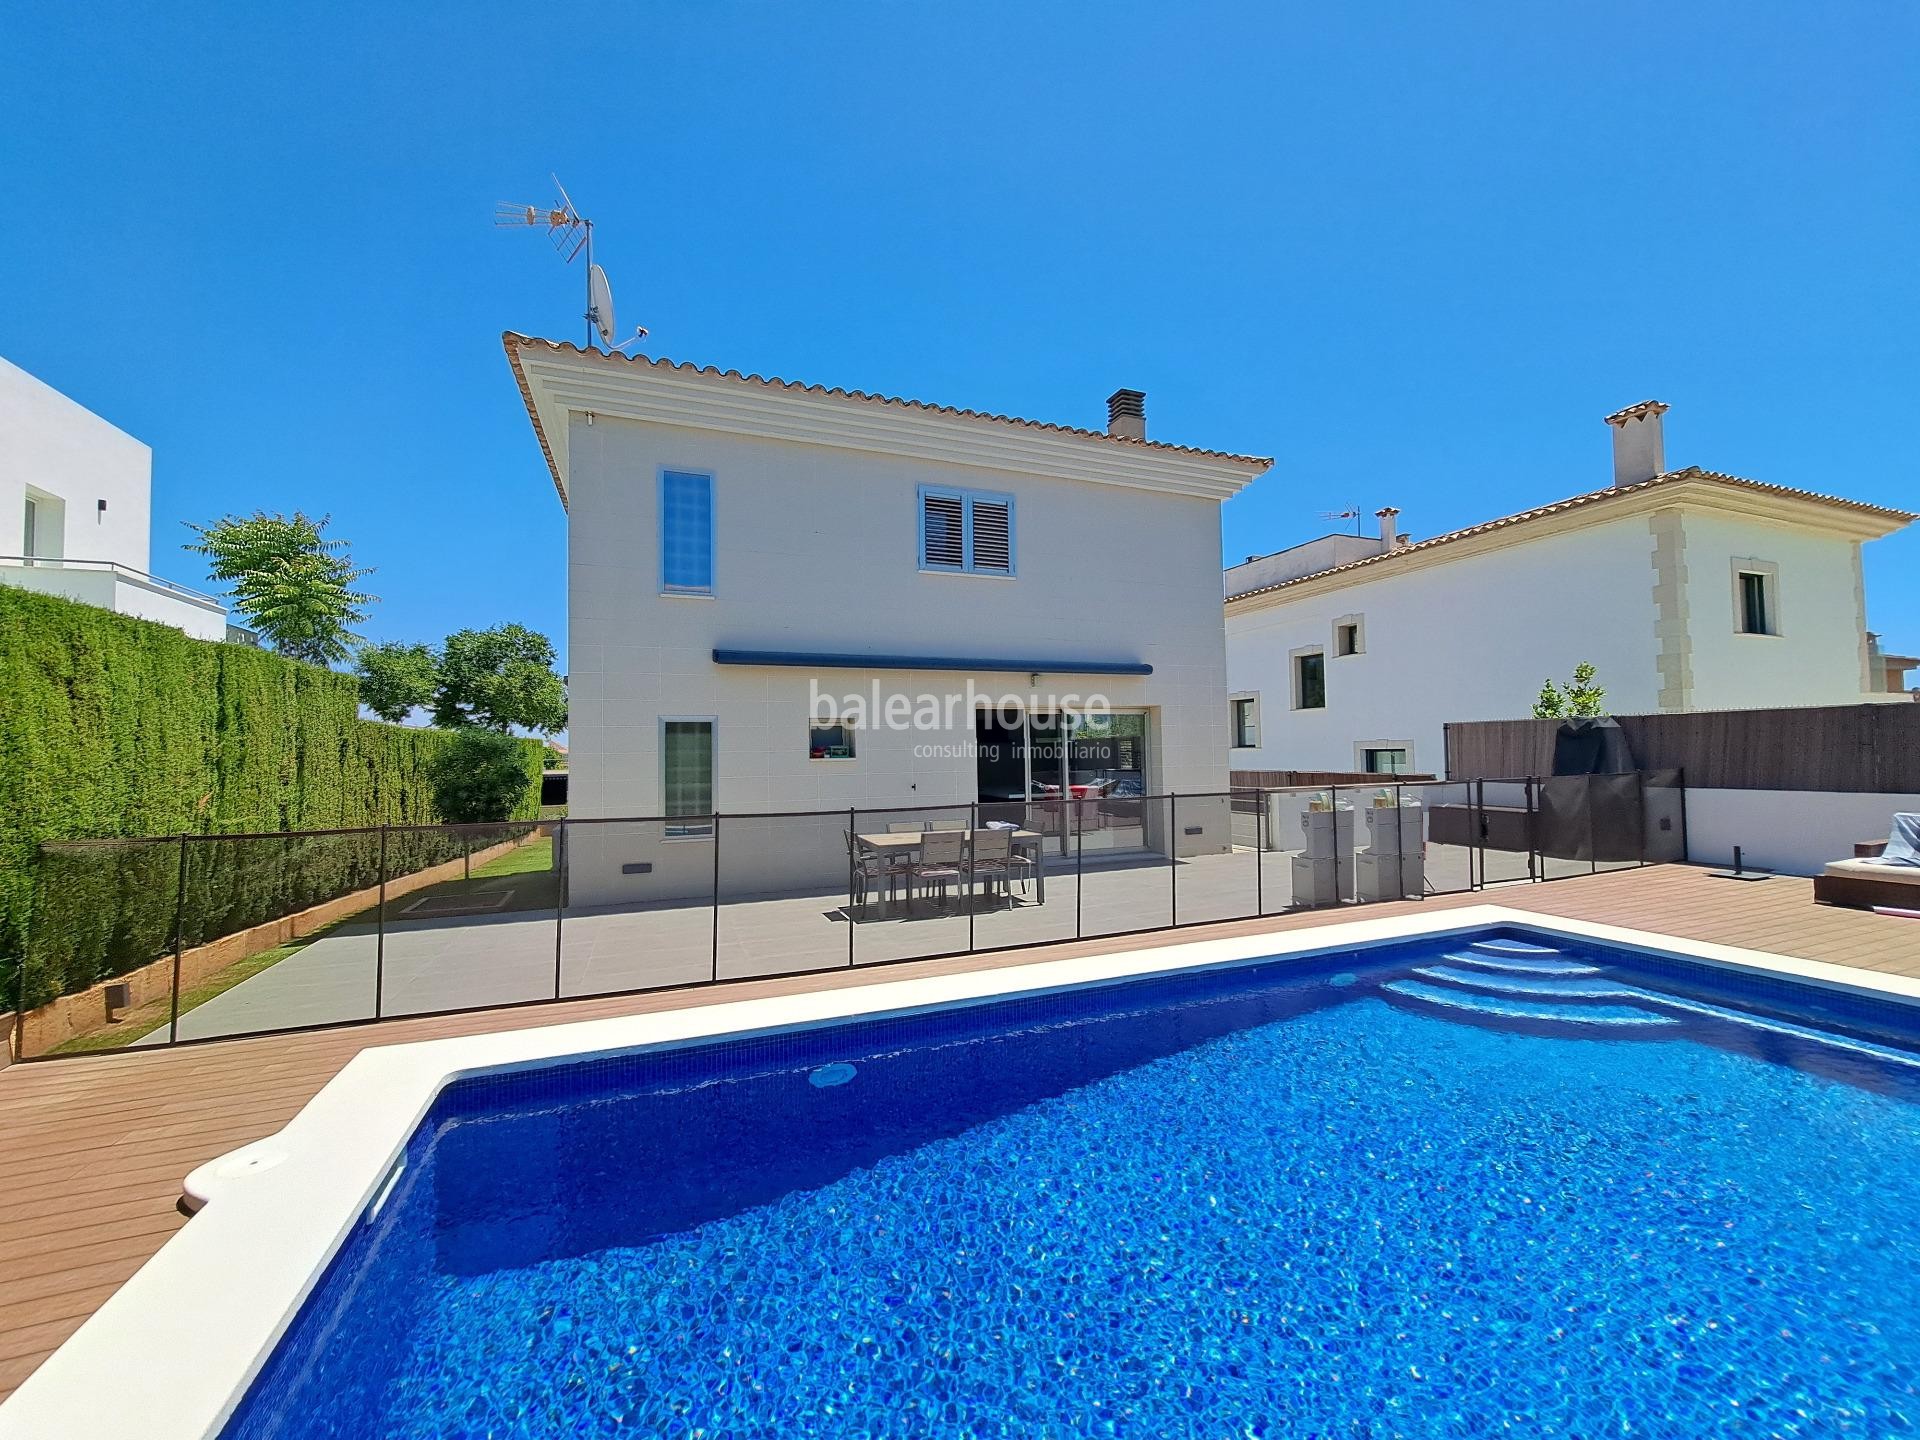 Moderne Villa mit Pool in der ruhigen Gegend von Son Puig, ganz in der Nähe des Zentrums von Palma.